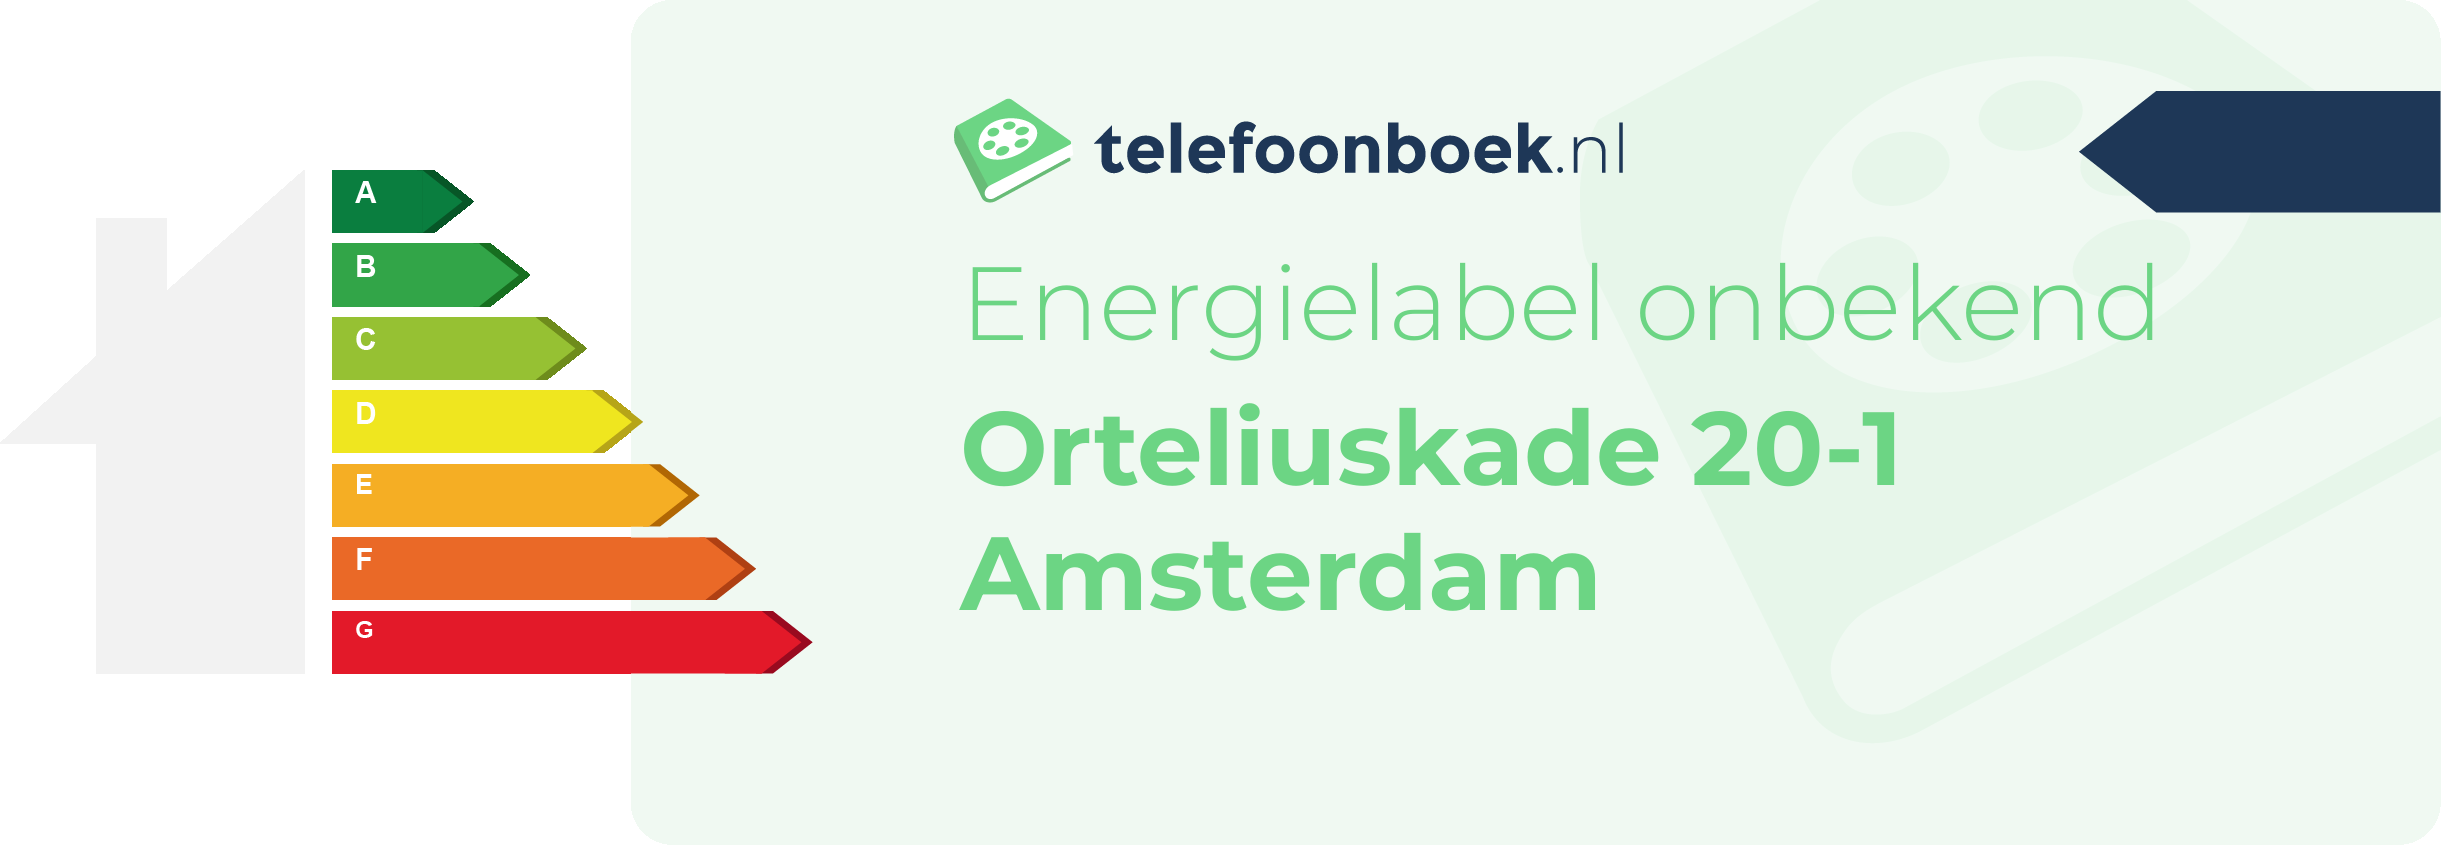 Energielabel Orteliuskade 20-1 Amsterdam